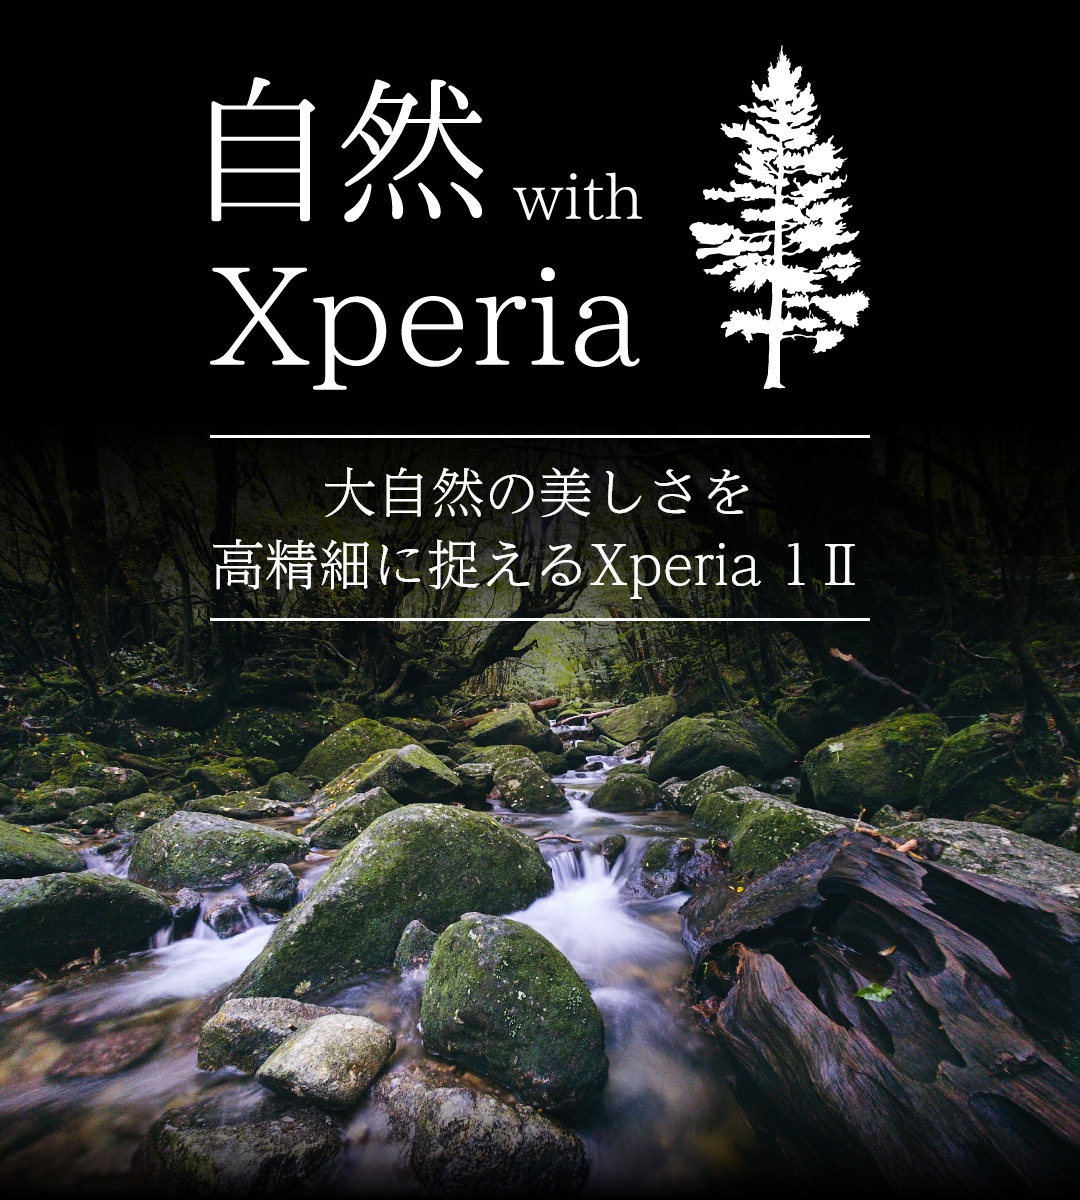 自然 with Xperia 大自然のダイナミズムを高精細に捉えるXperia 1 II